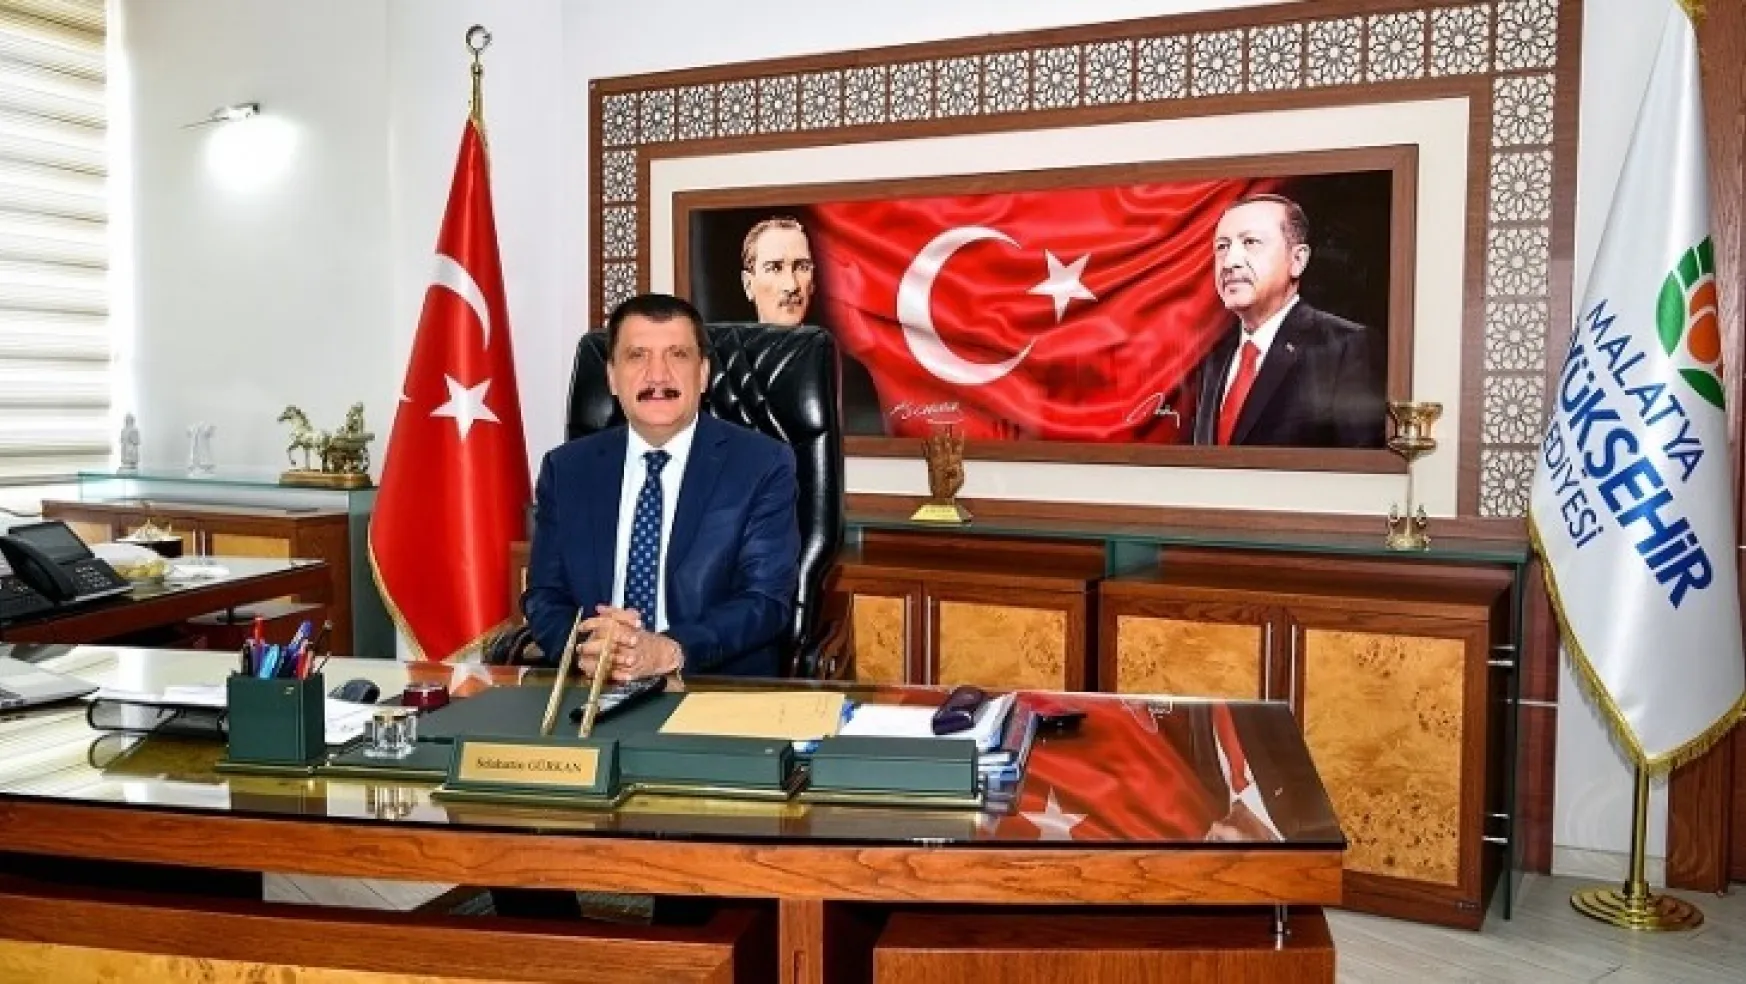 Başkan Gürkan'dan şehit düşen Mehmetçikler için başsağlığı mesajı